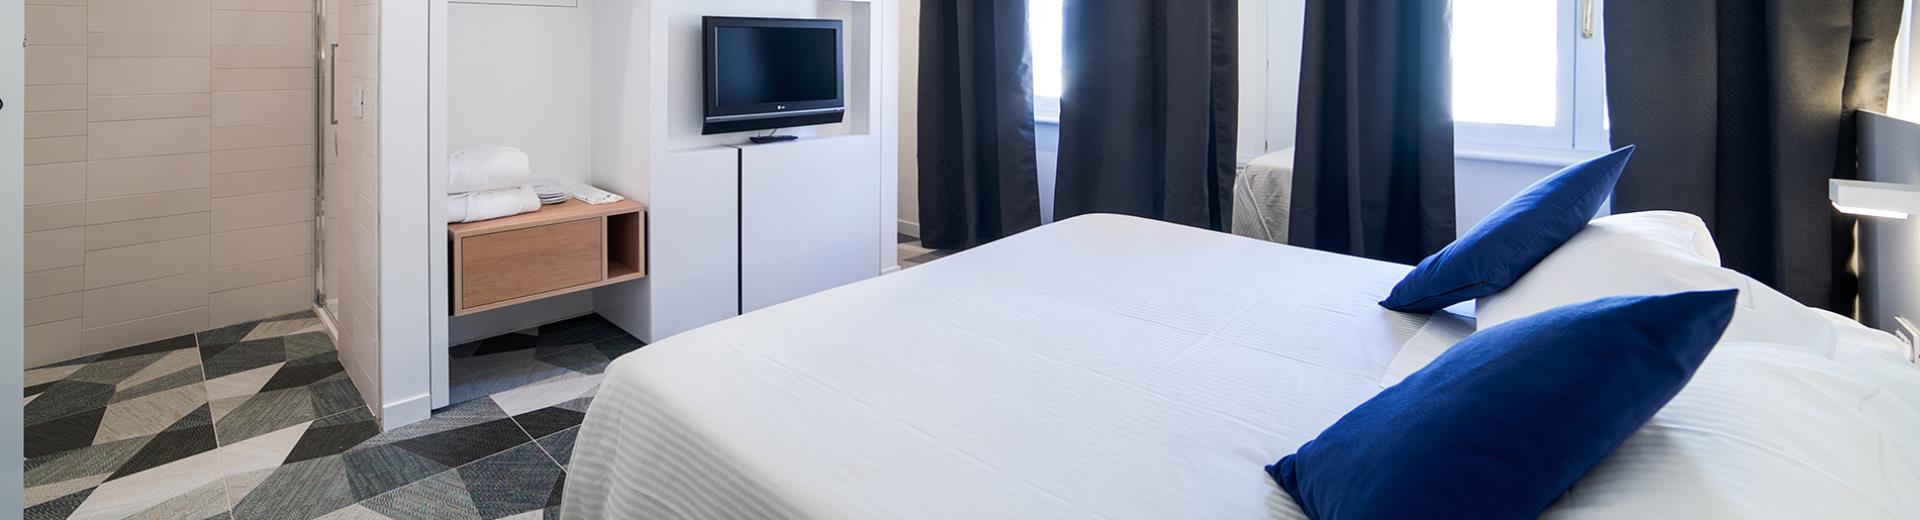 Hotel 4 stelle in centro a Bologna, oltre 90 camere di design dotate di ogni comfort